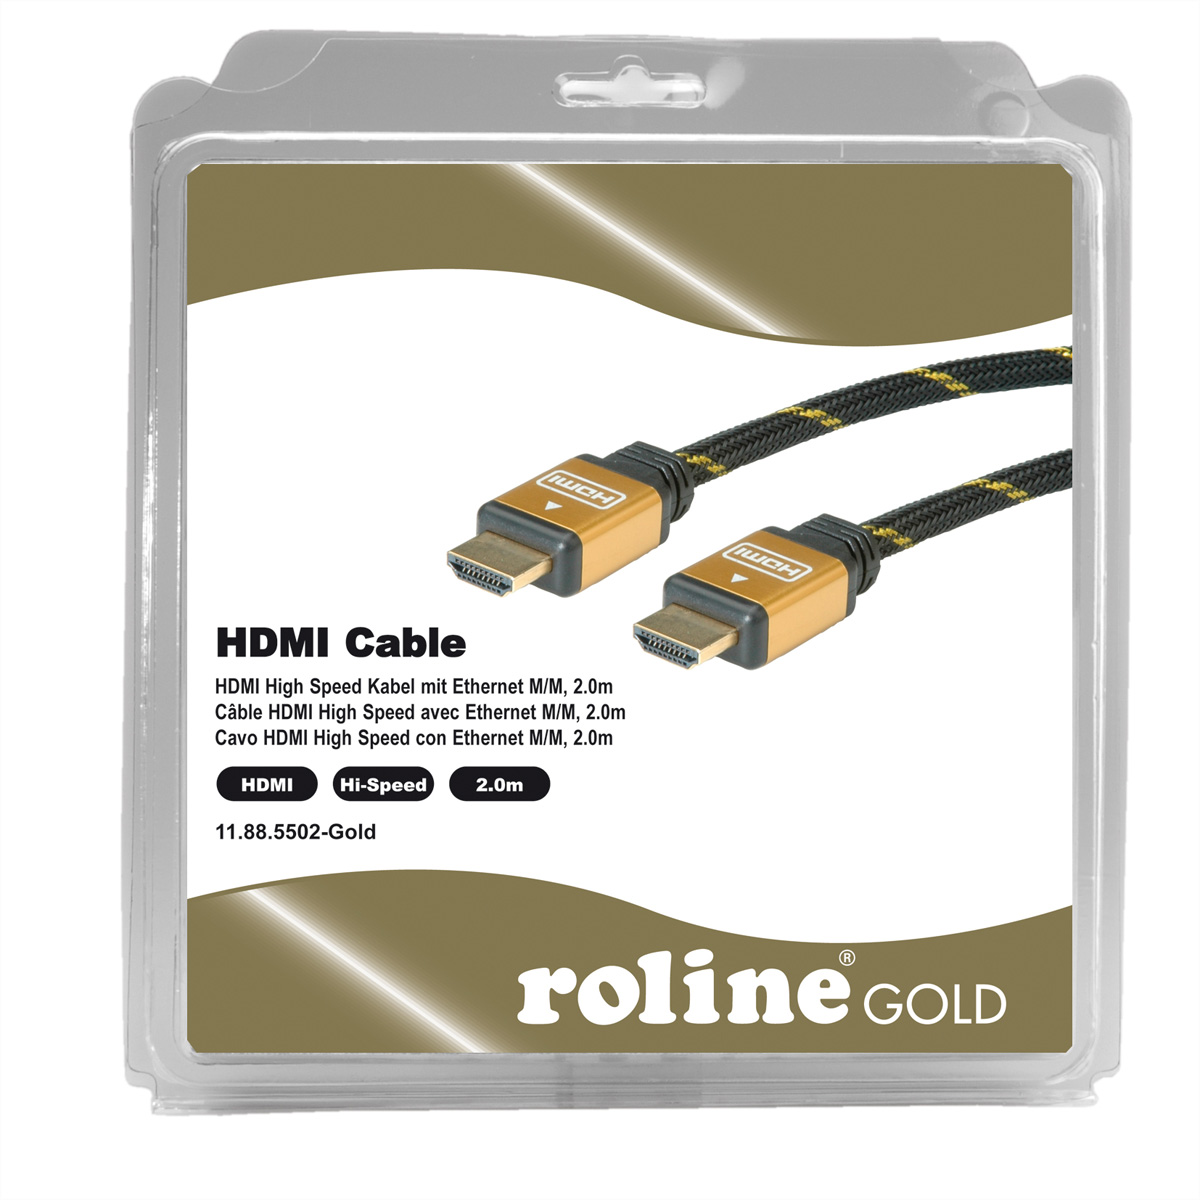 ROLINE GOLD HDMI Kabel mit Speed mit High Ethernet Speed HDMI High Kabel Ethernet